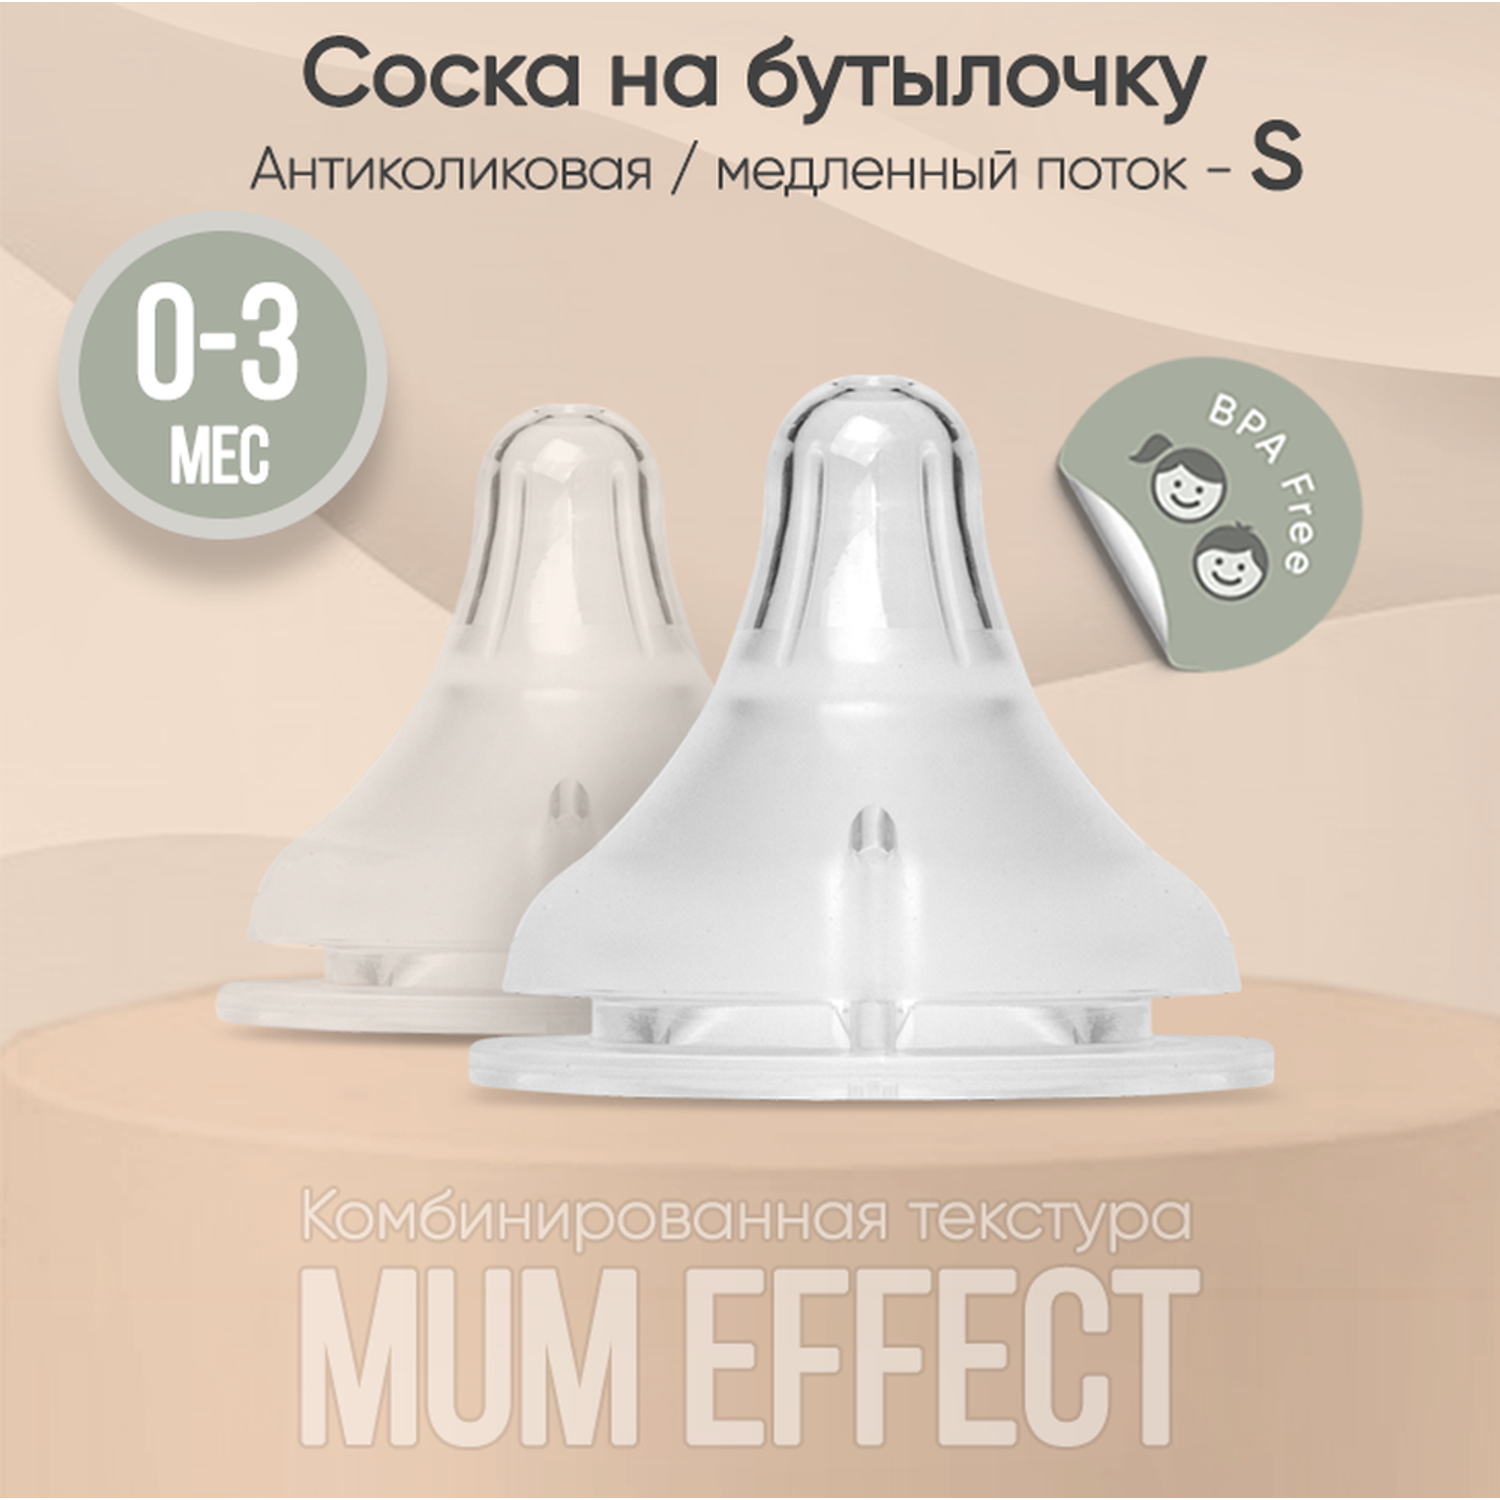 Соска на бутылочку paomma mum effect Anti Colic S 0-3 мес для новорожденных 2 шт - фото 1